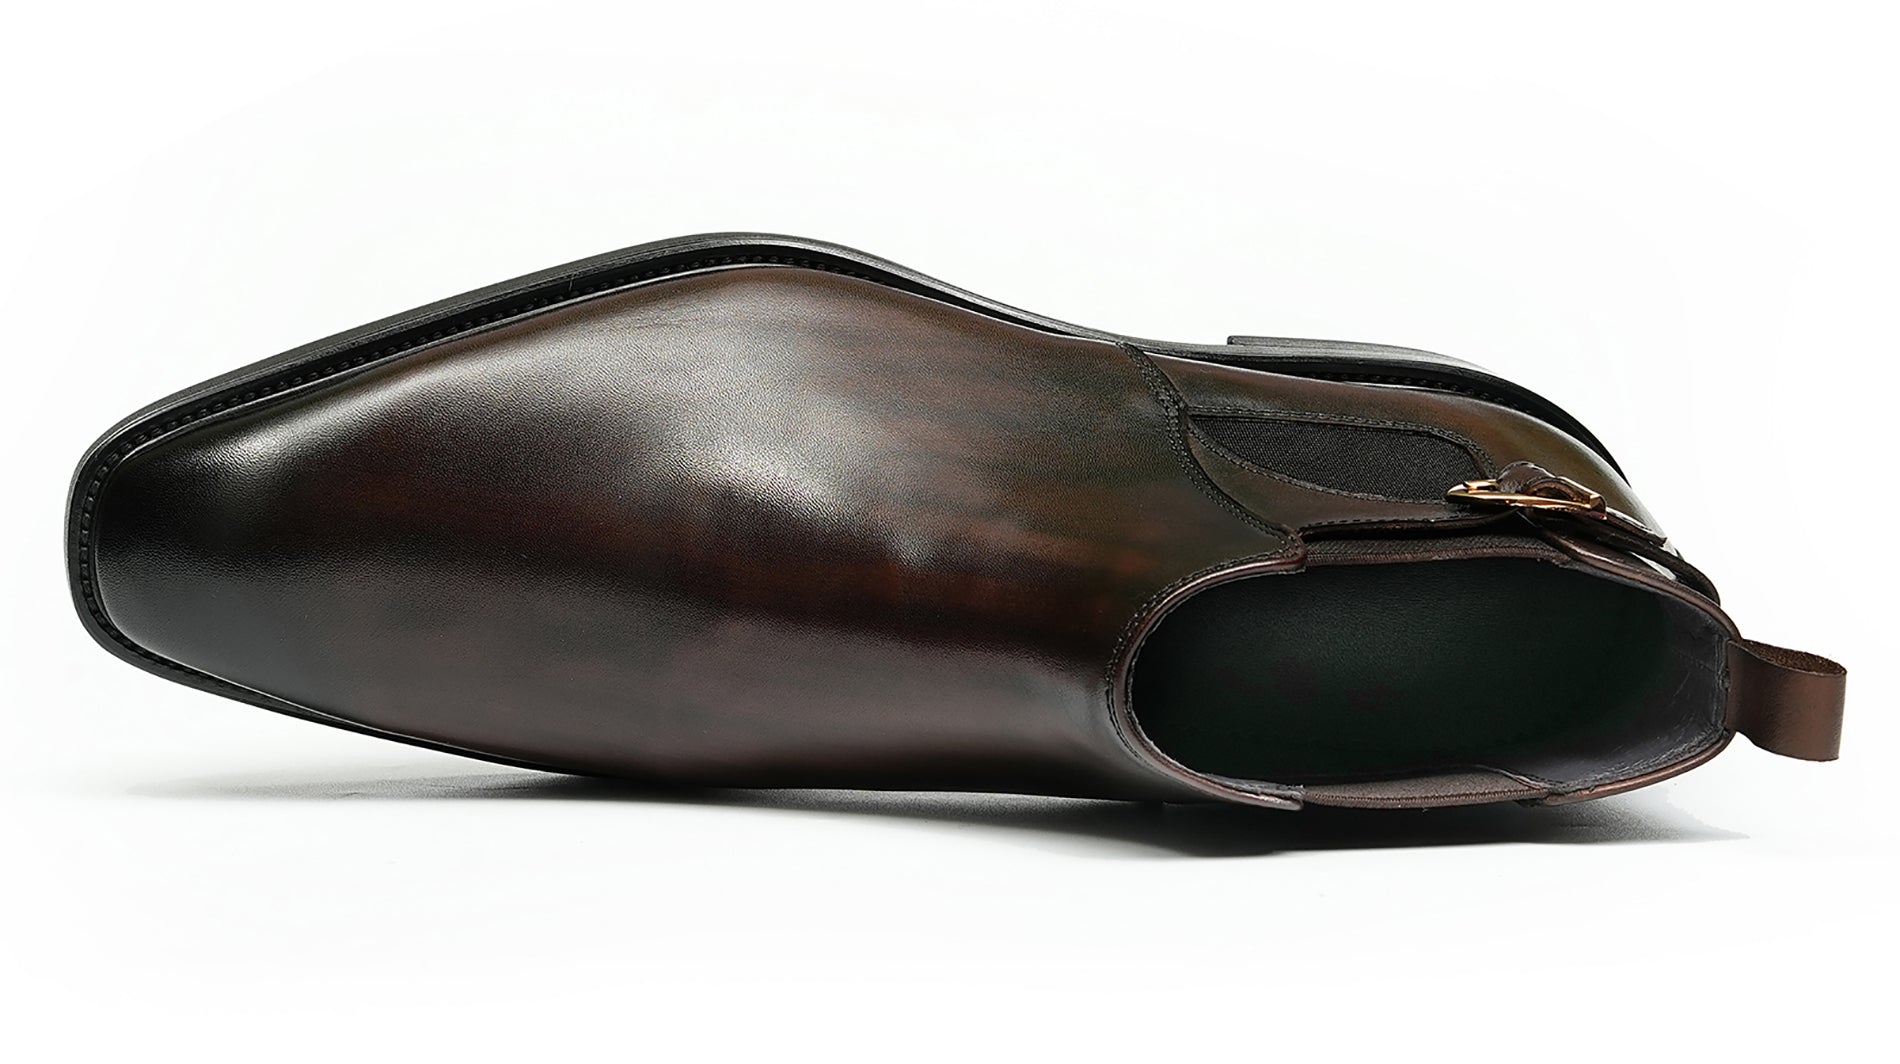 Men's Handmade Formal Buckle Chelsea Boots